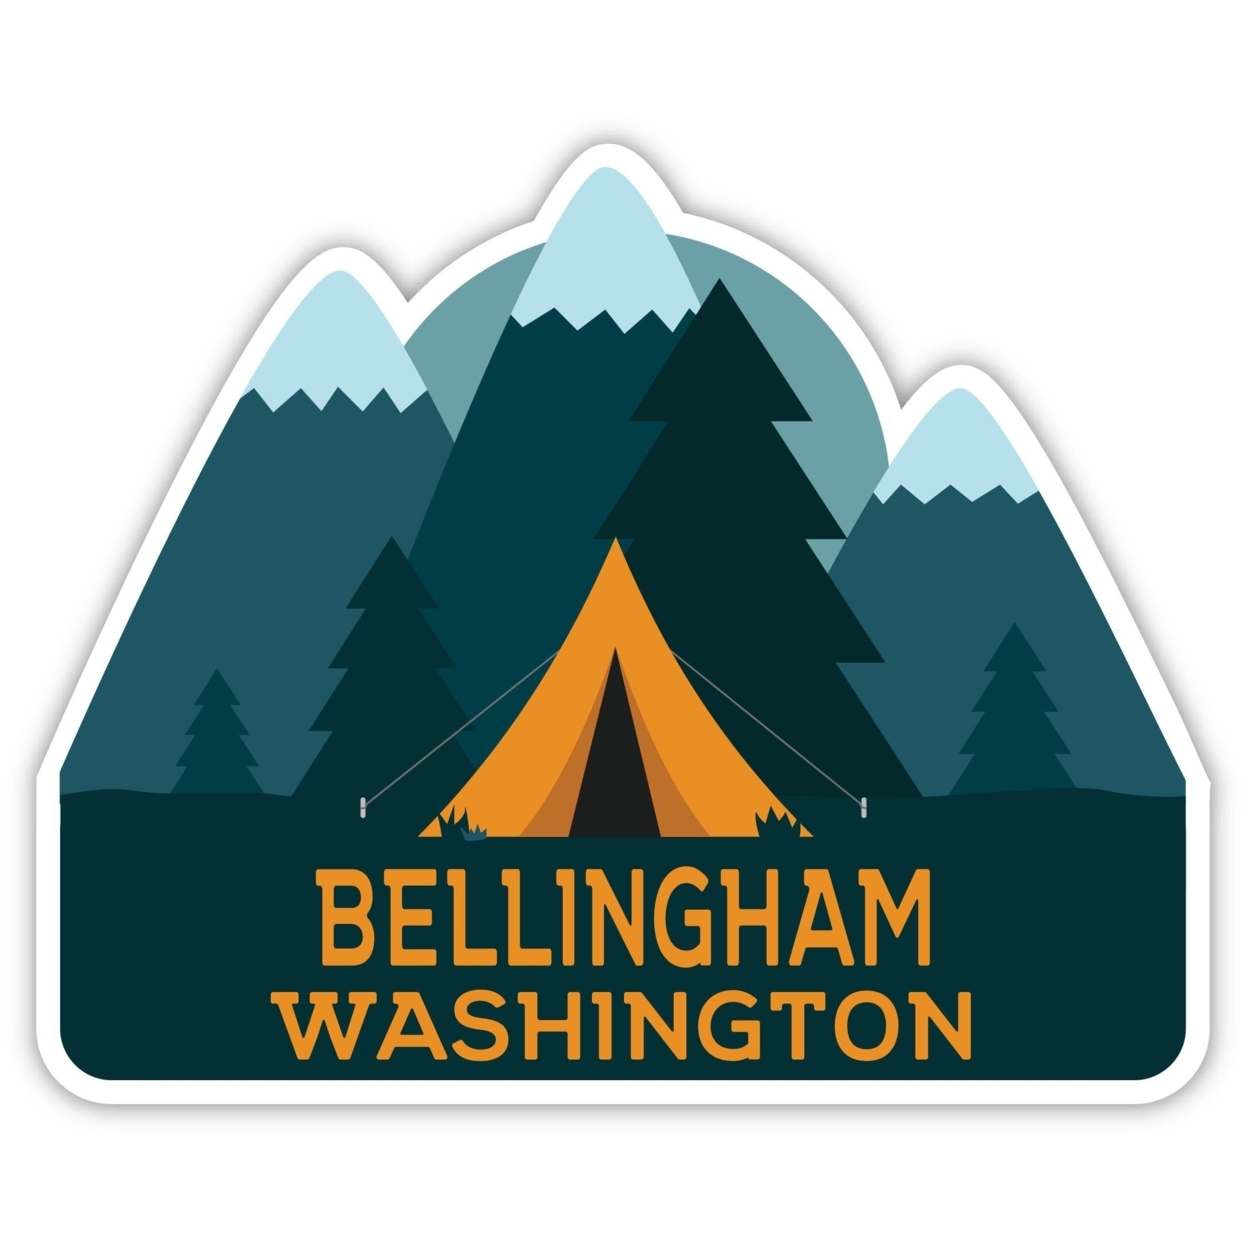 Bellingham Washington Souvenir Decorative Stickers (Choose Theme And Size) - Single Unit, 10-Inch, Tent